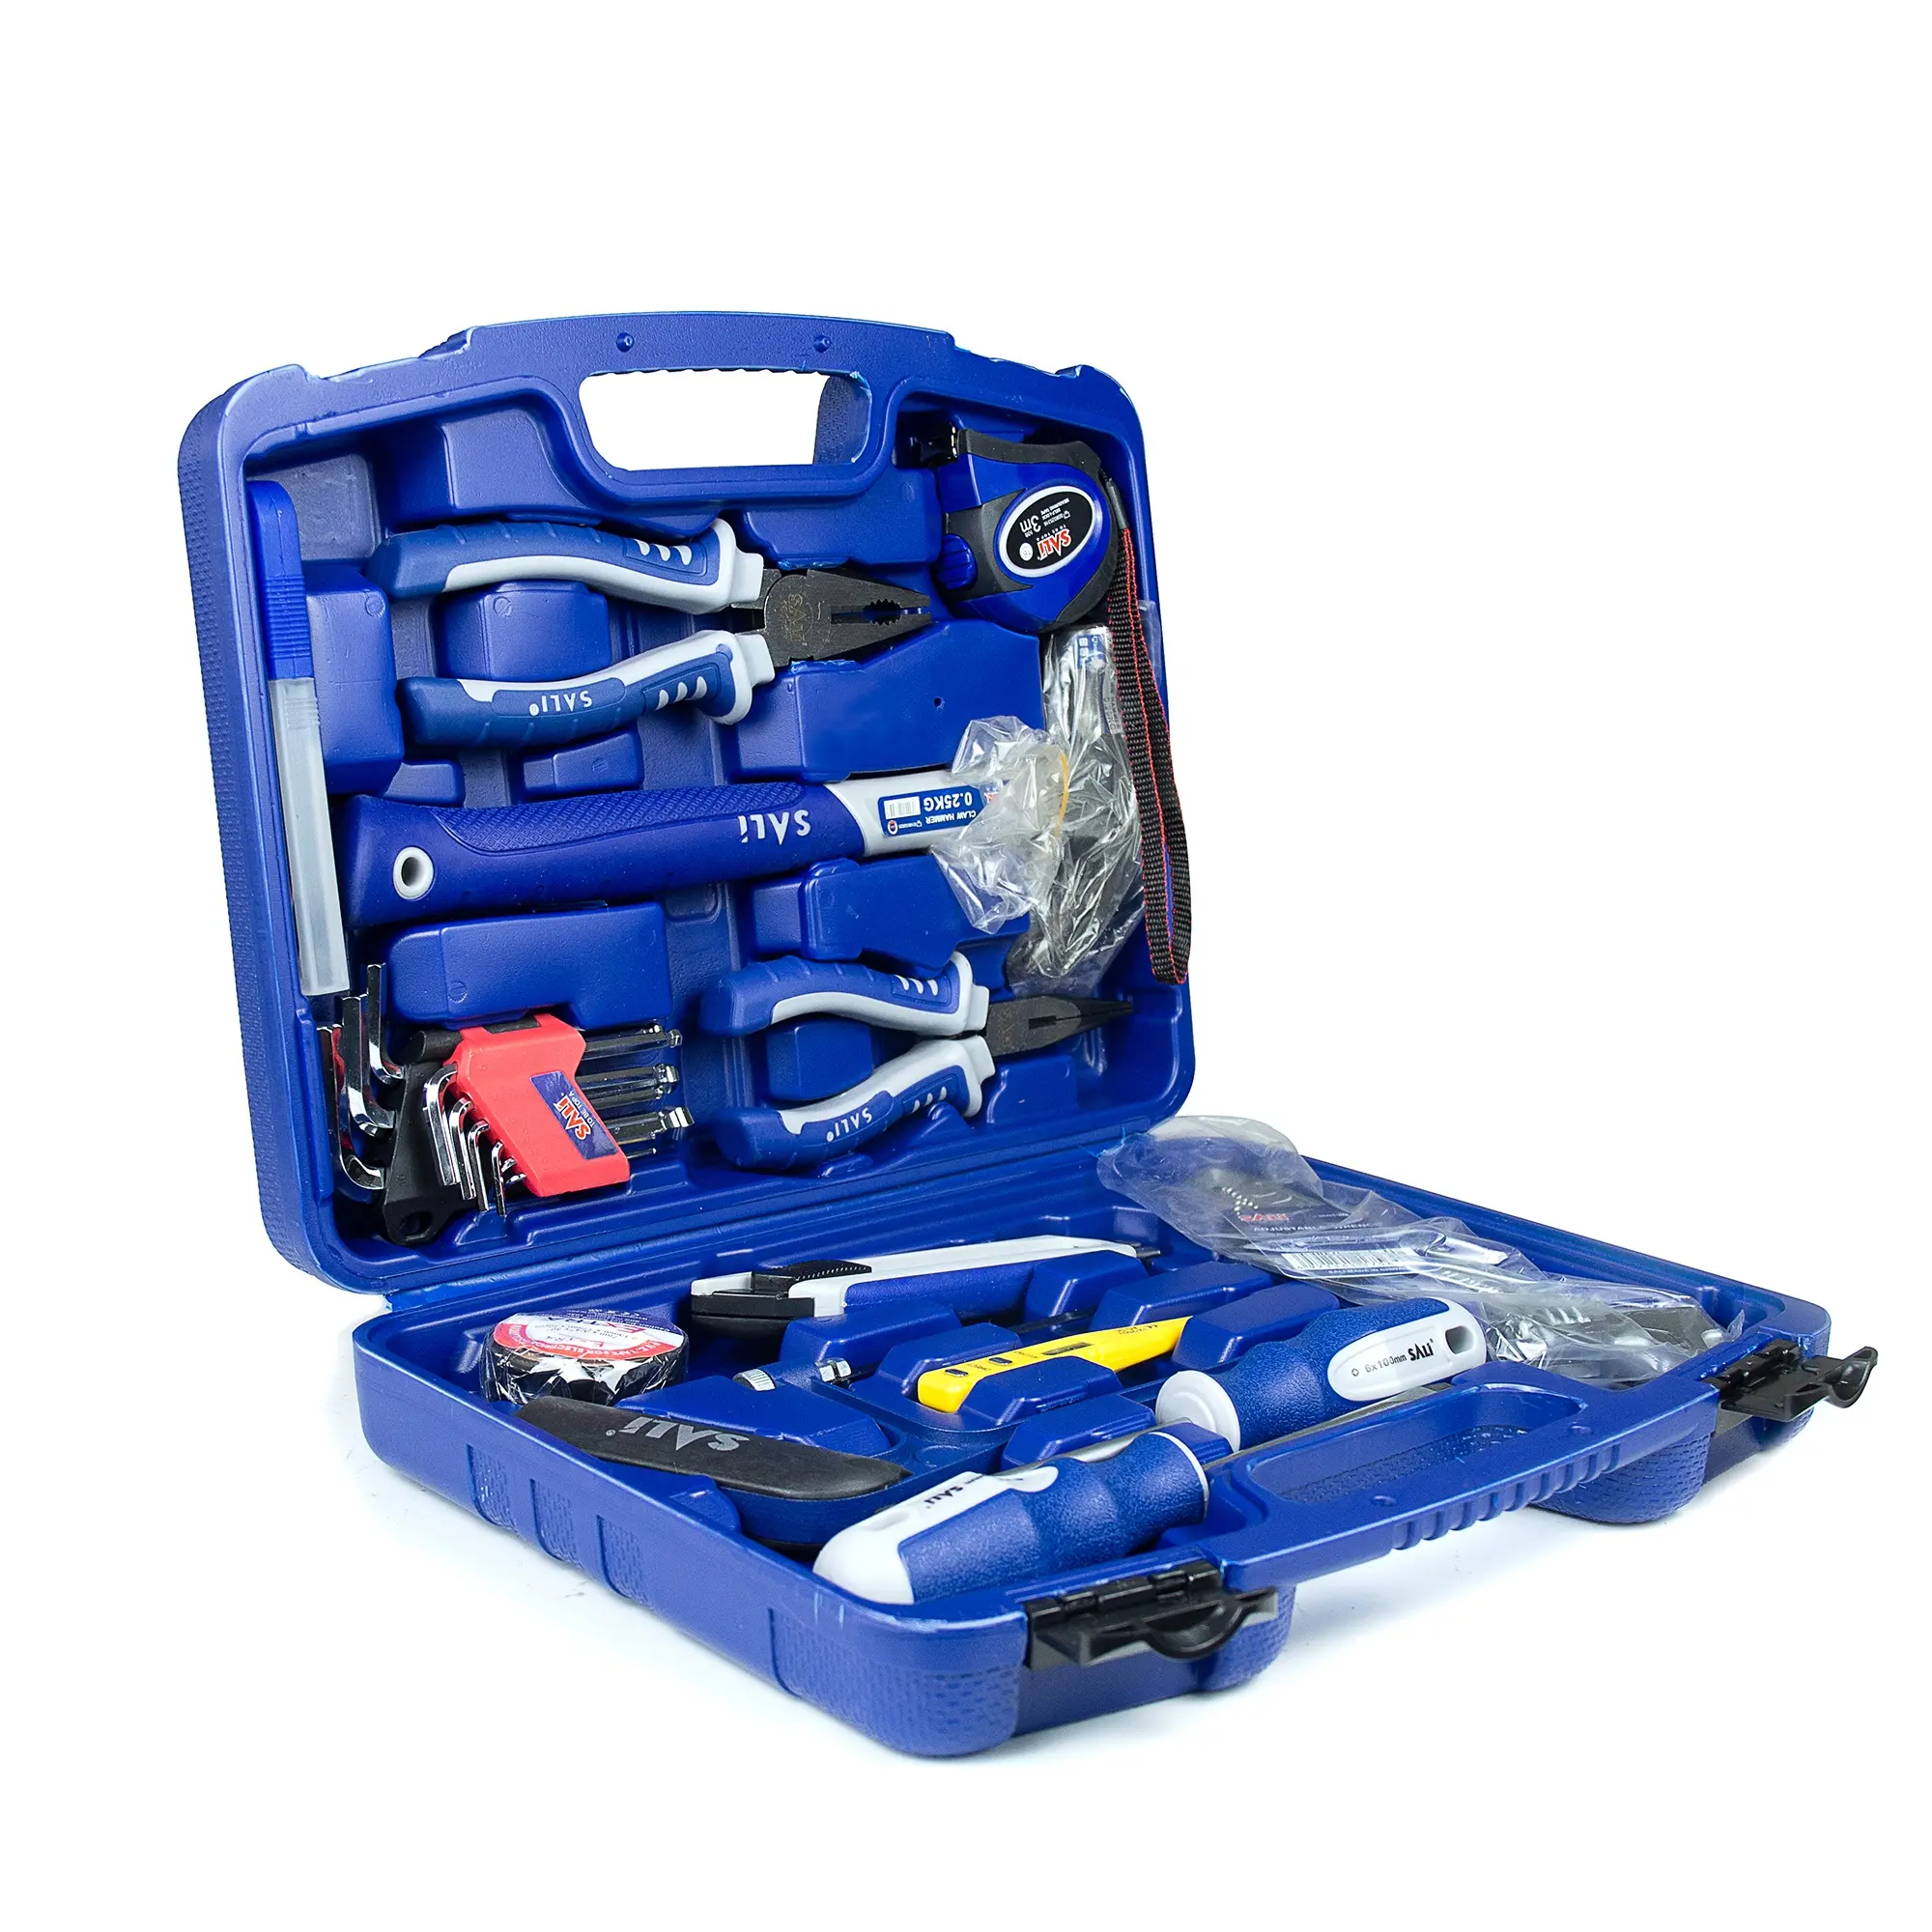 SALI 13pcs combinazione di utensili manuali fai da te usa scatola di plastica blu valigia set di strumenti multiuso